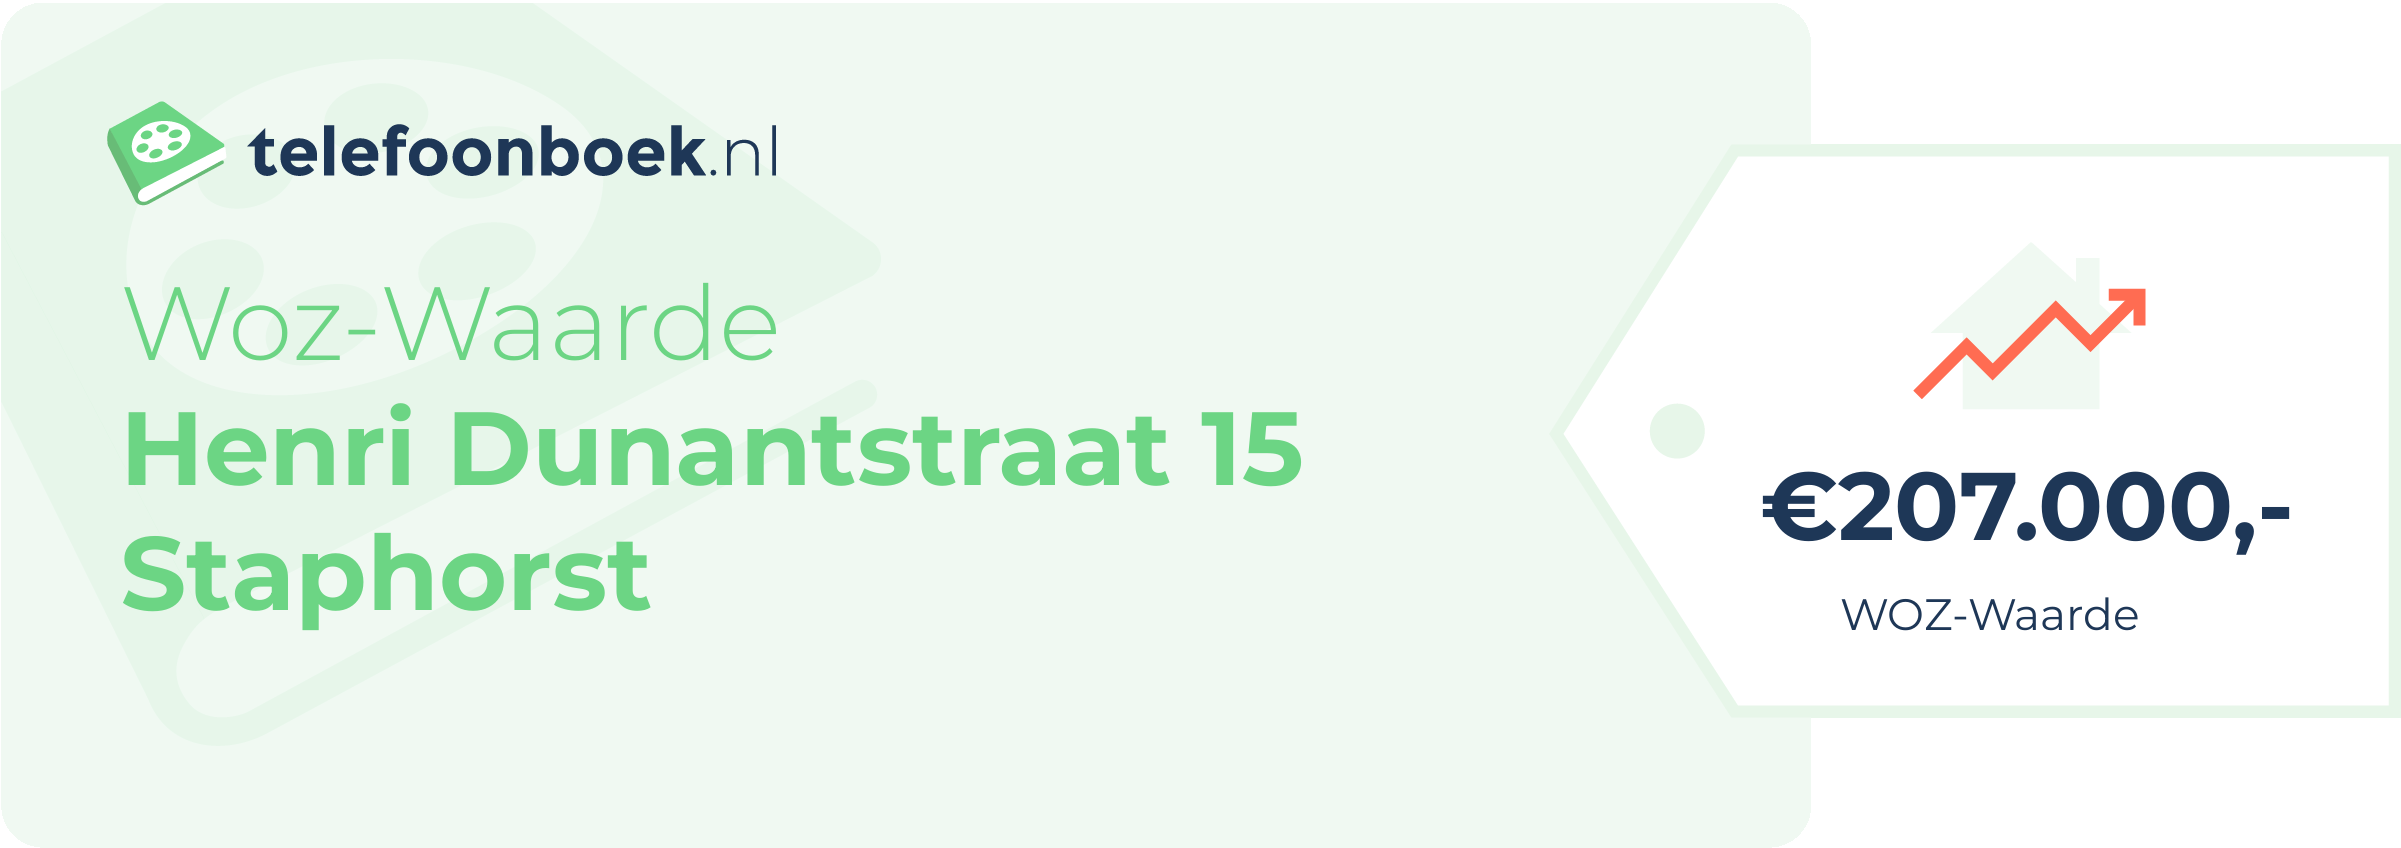 WOZ-waarde Henri Dunantstraat 15 Staphorst